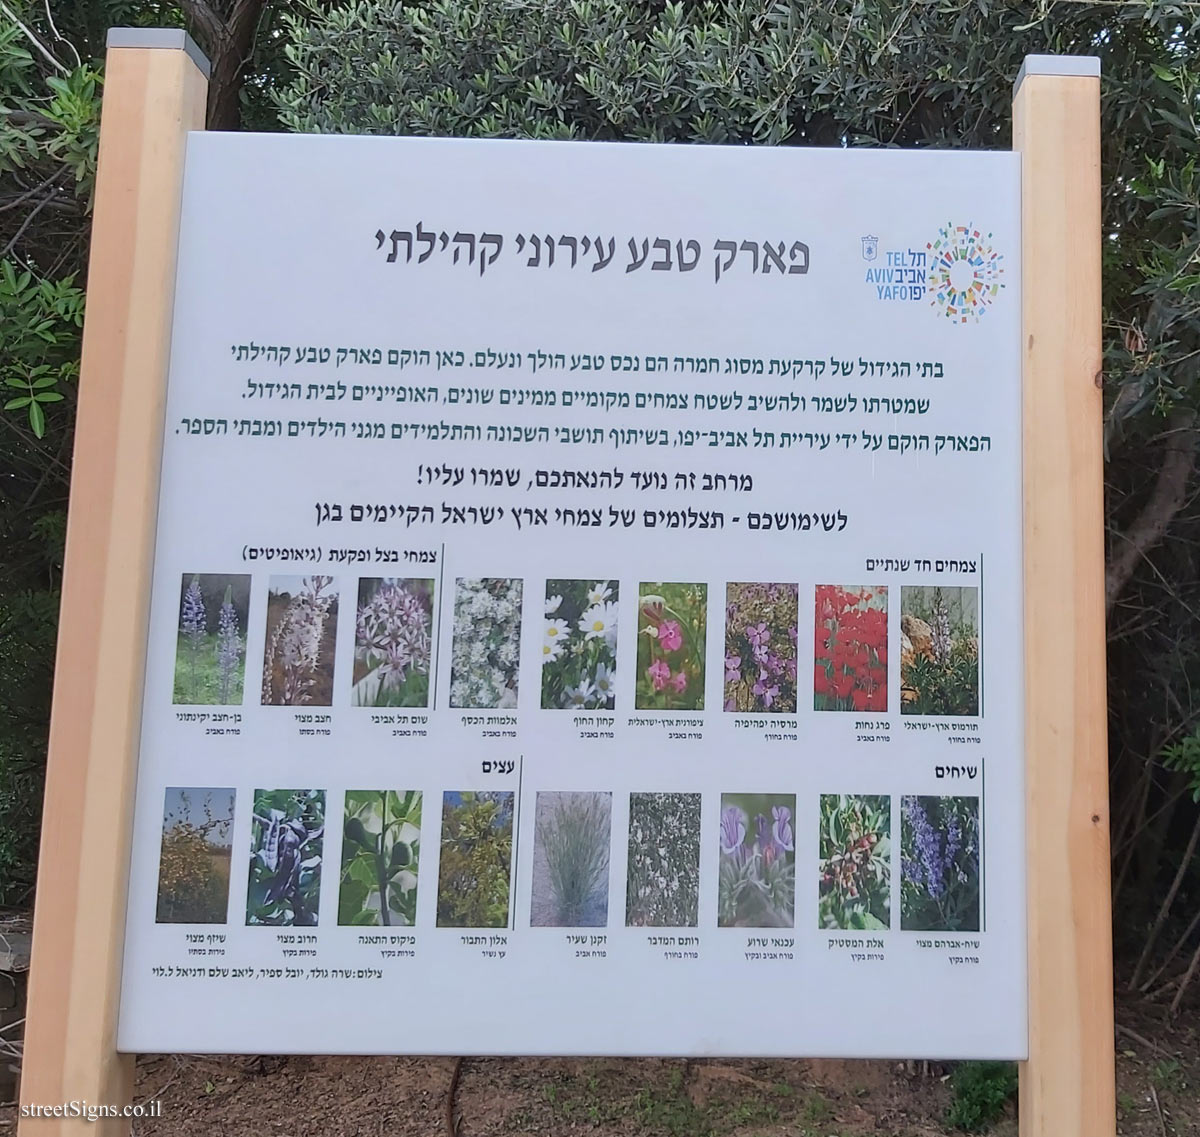 תל אביב - פארק טבע עירוני קהילתי